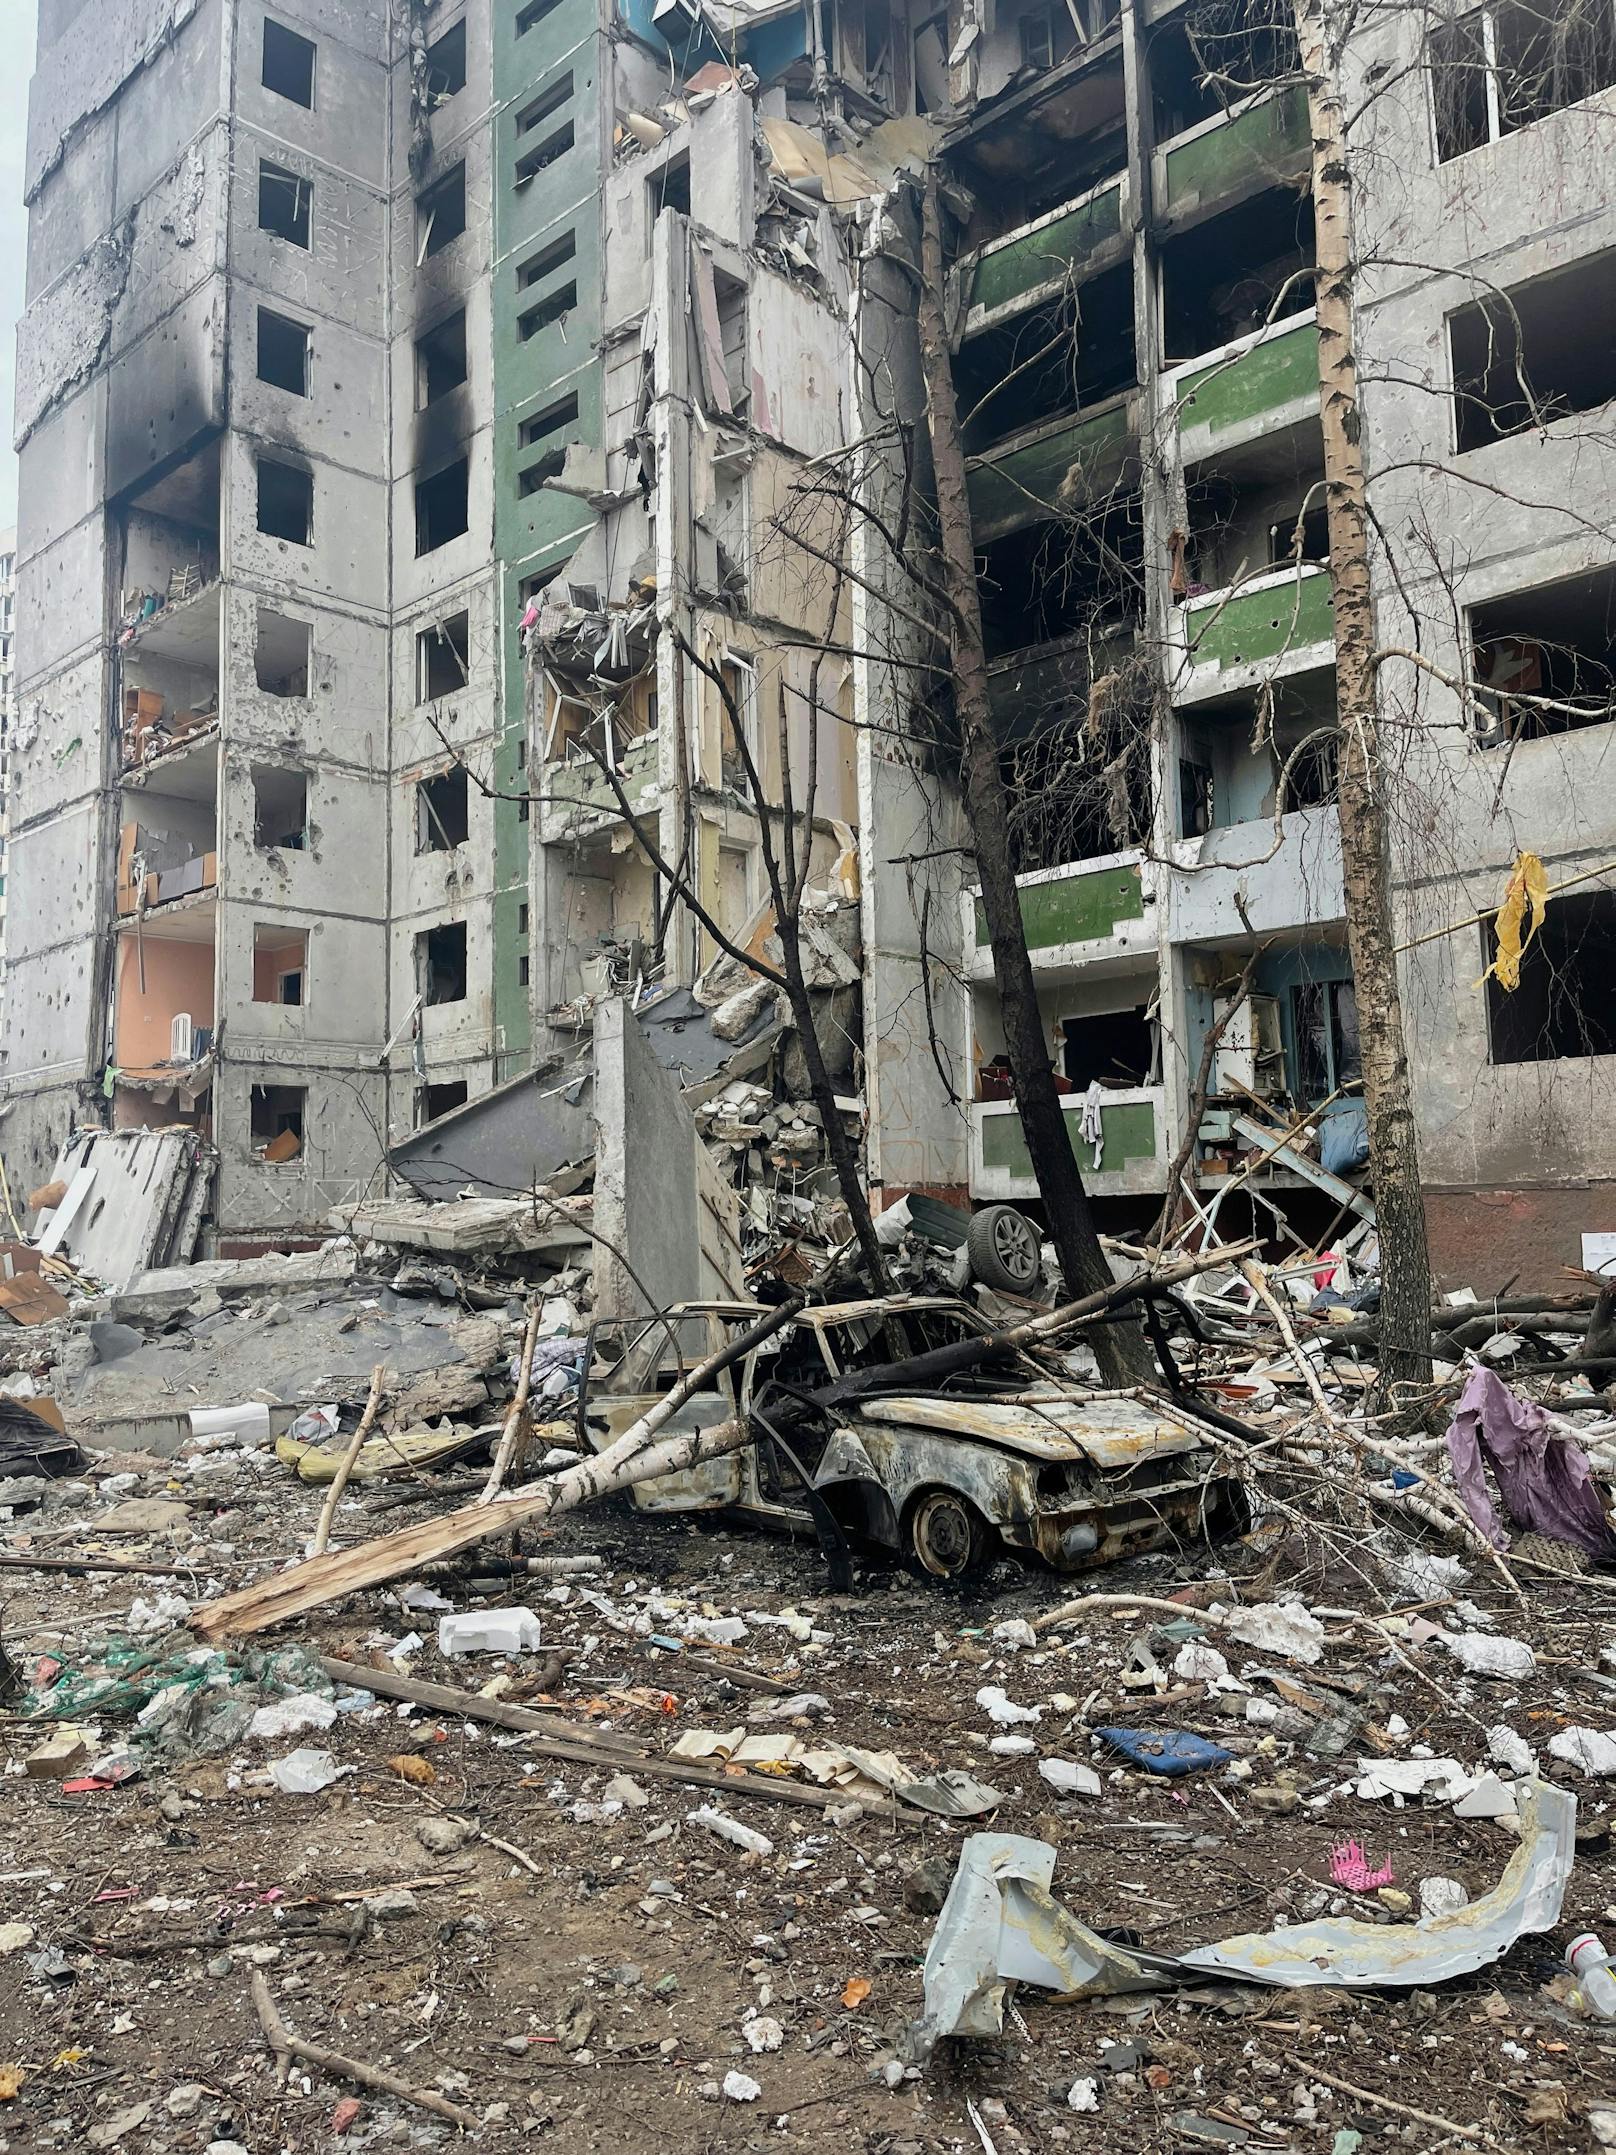 Bild von einem zerbombten Haus in der Ukraine.